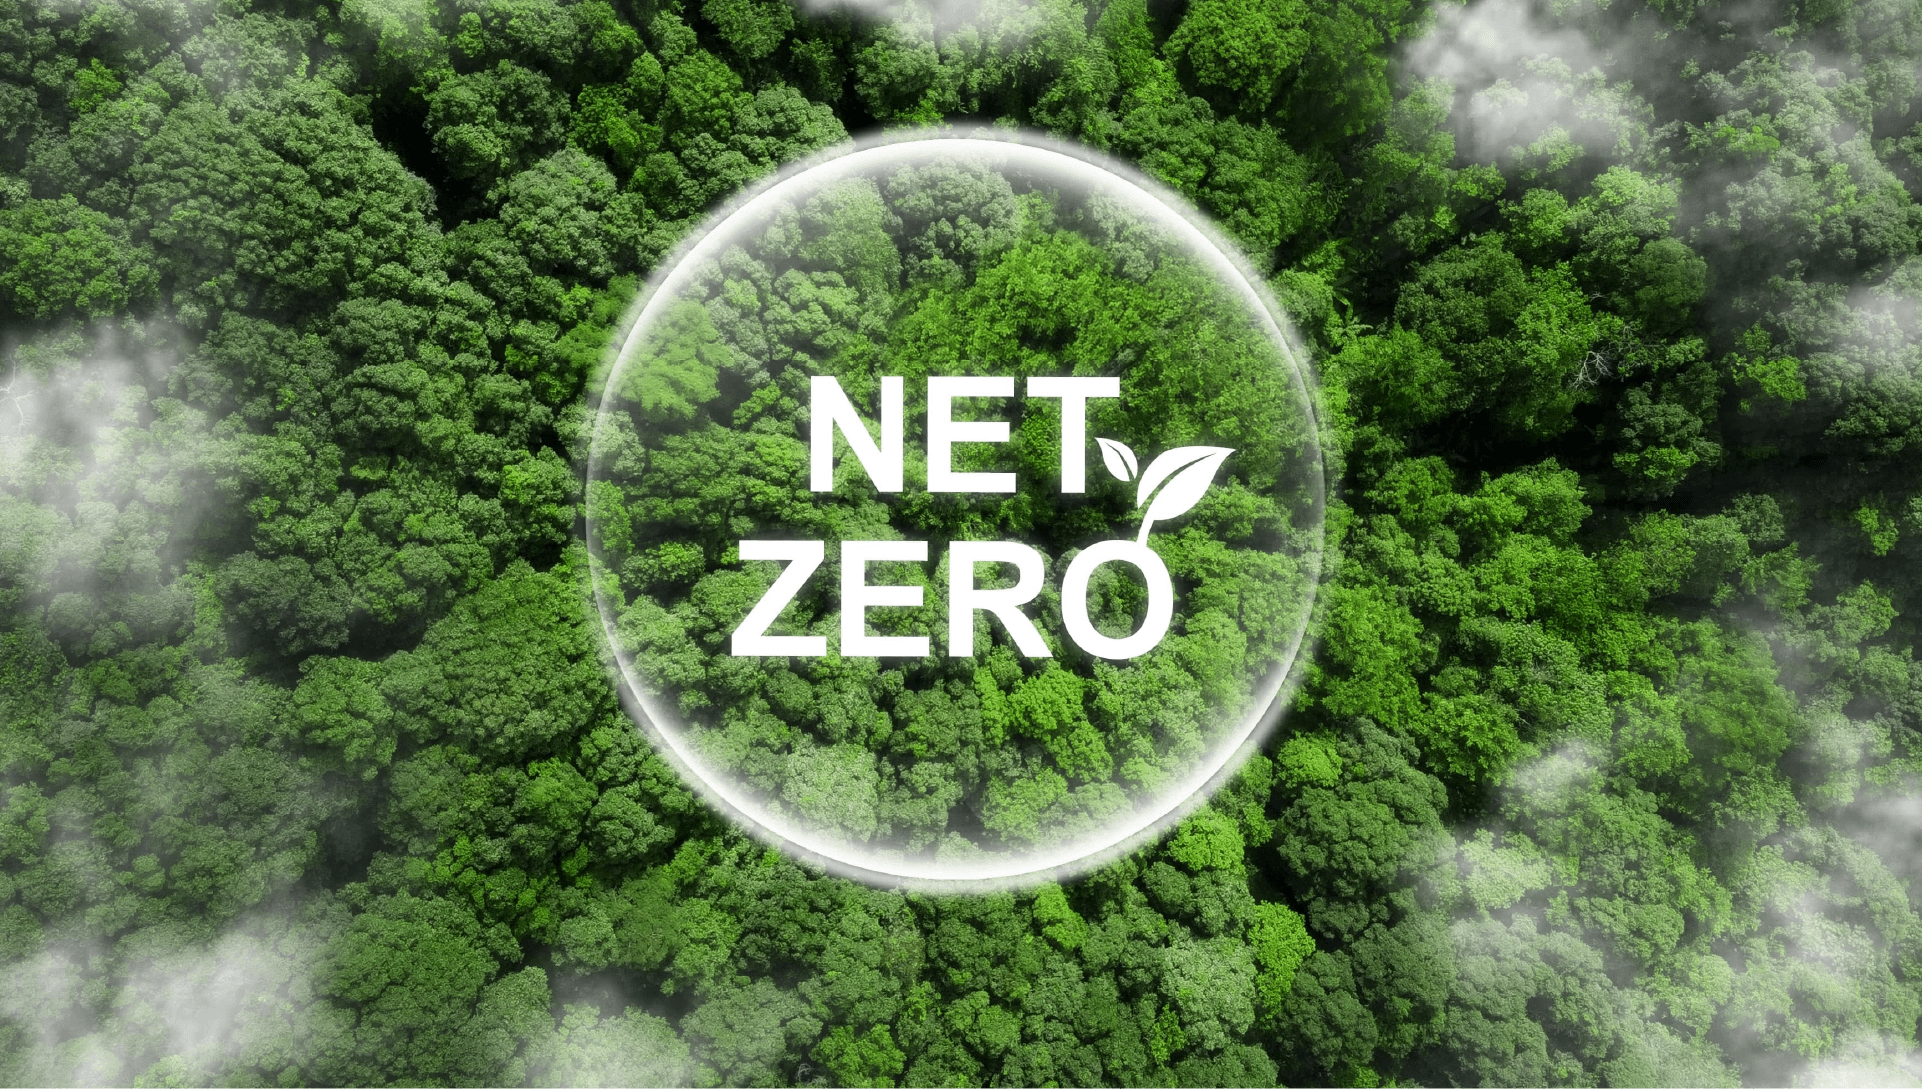 Alto CERO - Toward Net Zero